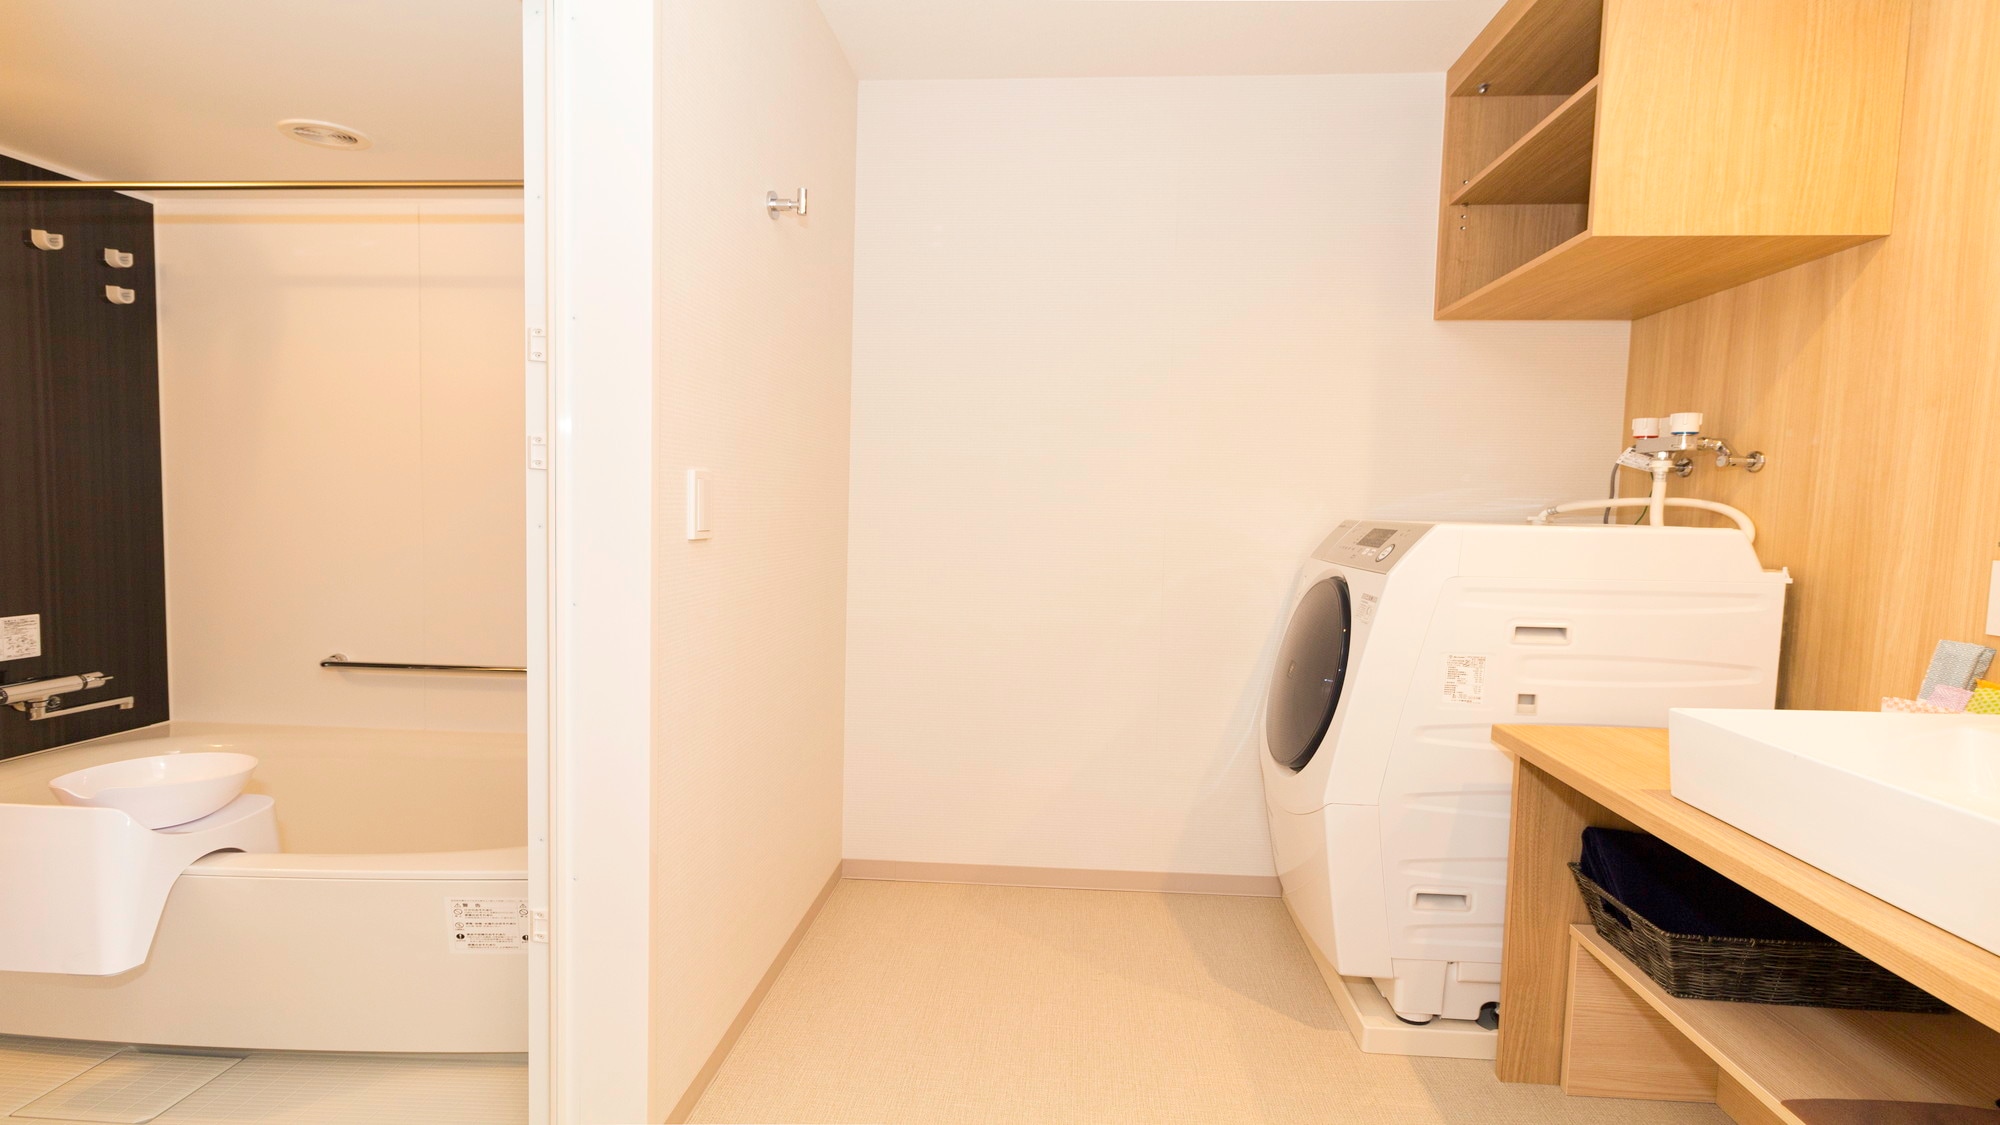 住宅房间配有厨房、壁橱和家用电器（洗衣机、冰箱、吸尘器等）。